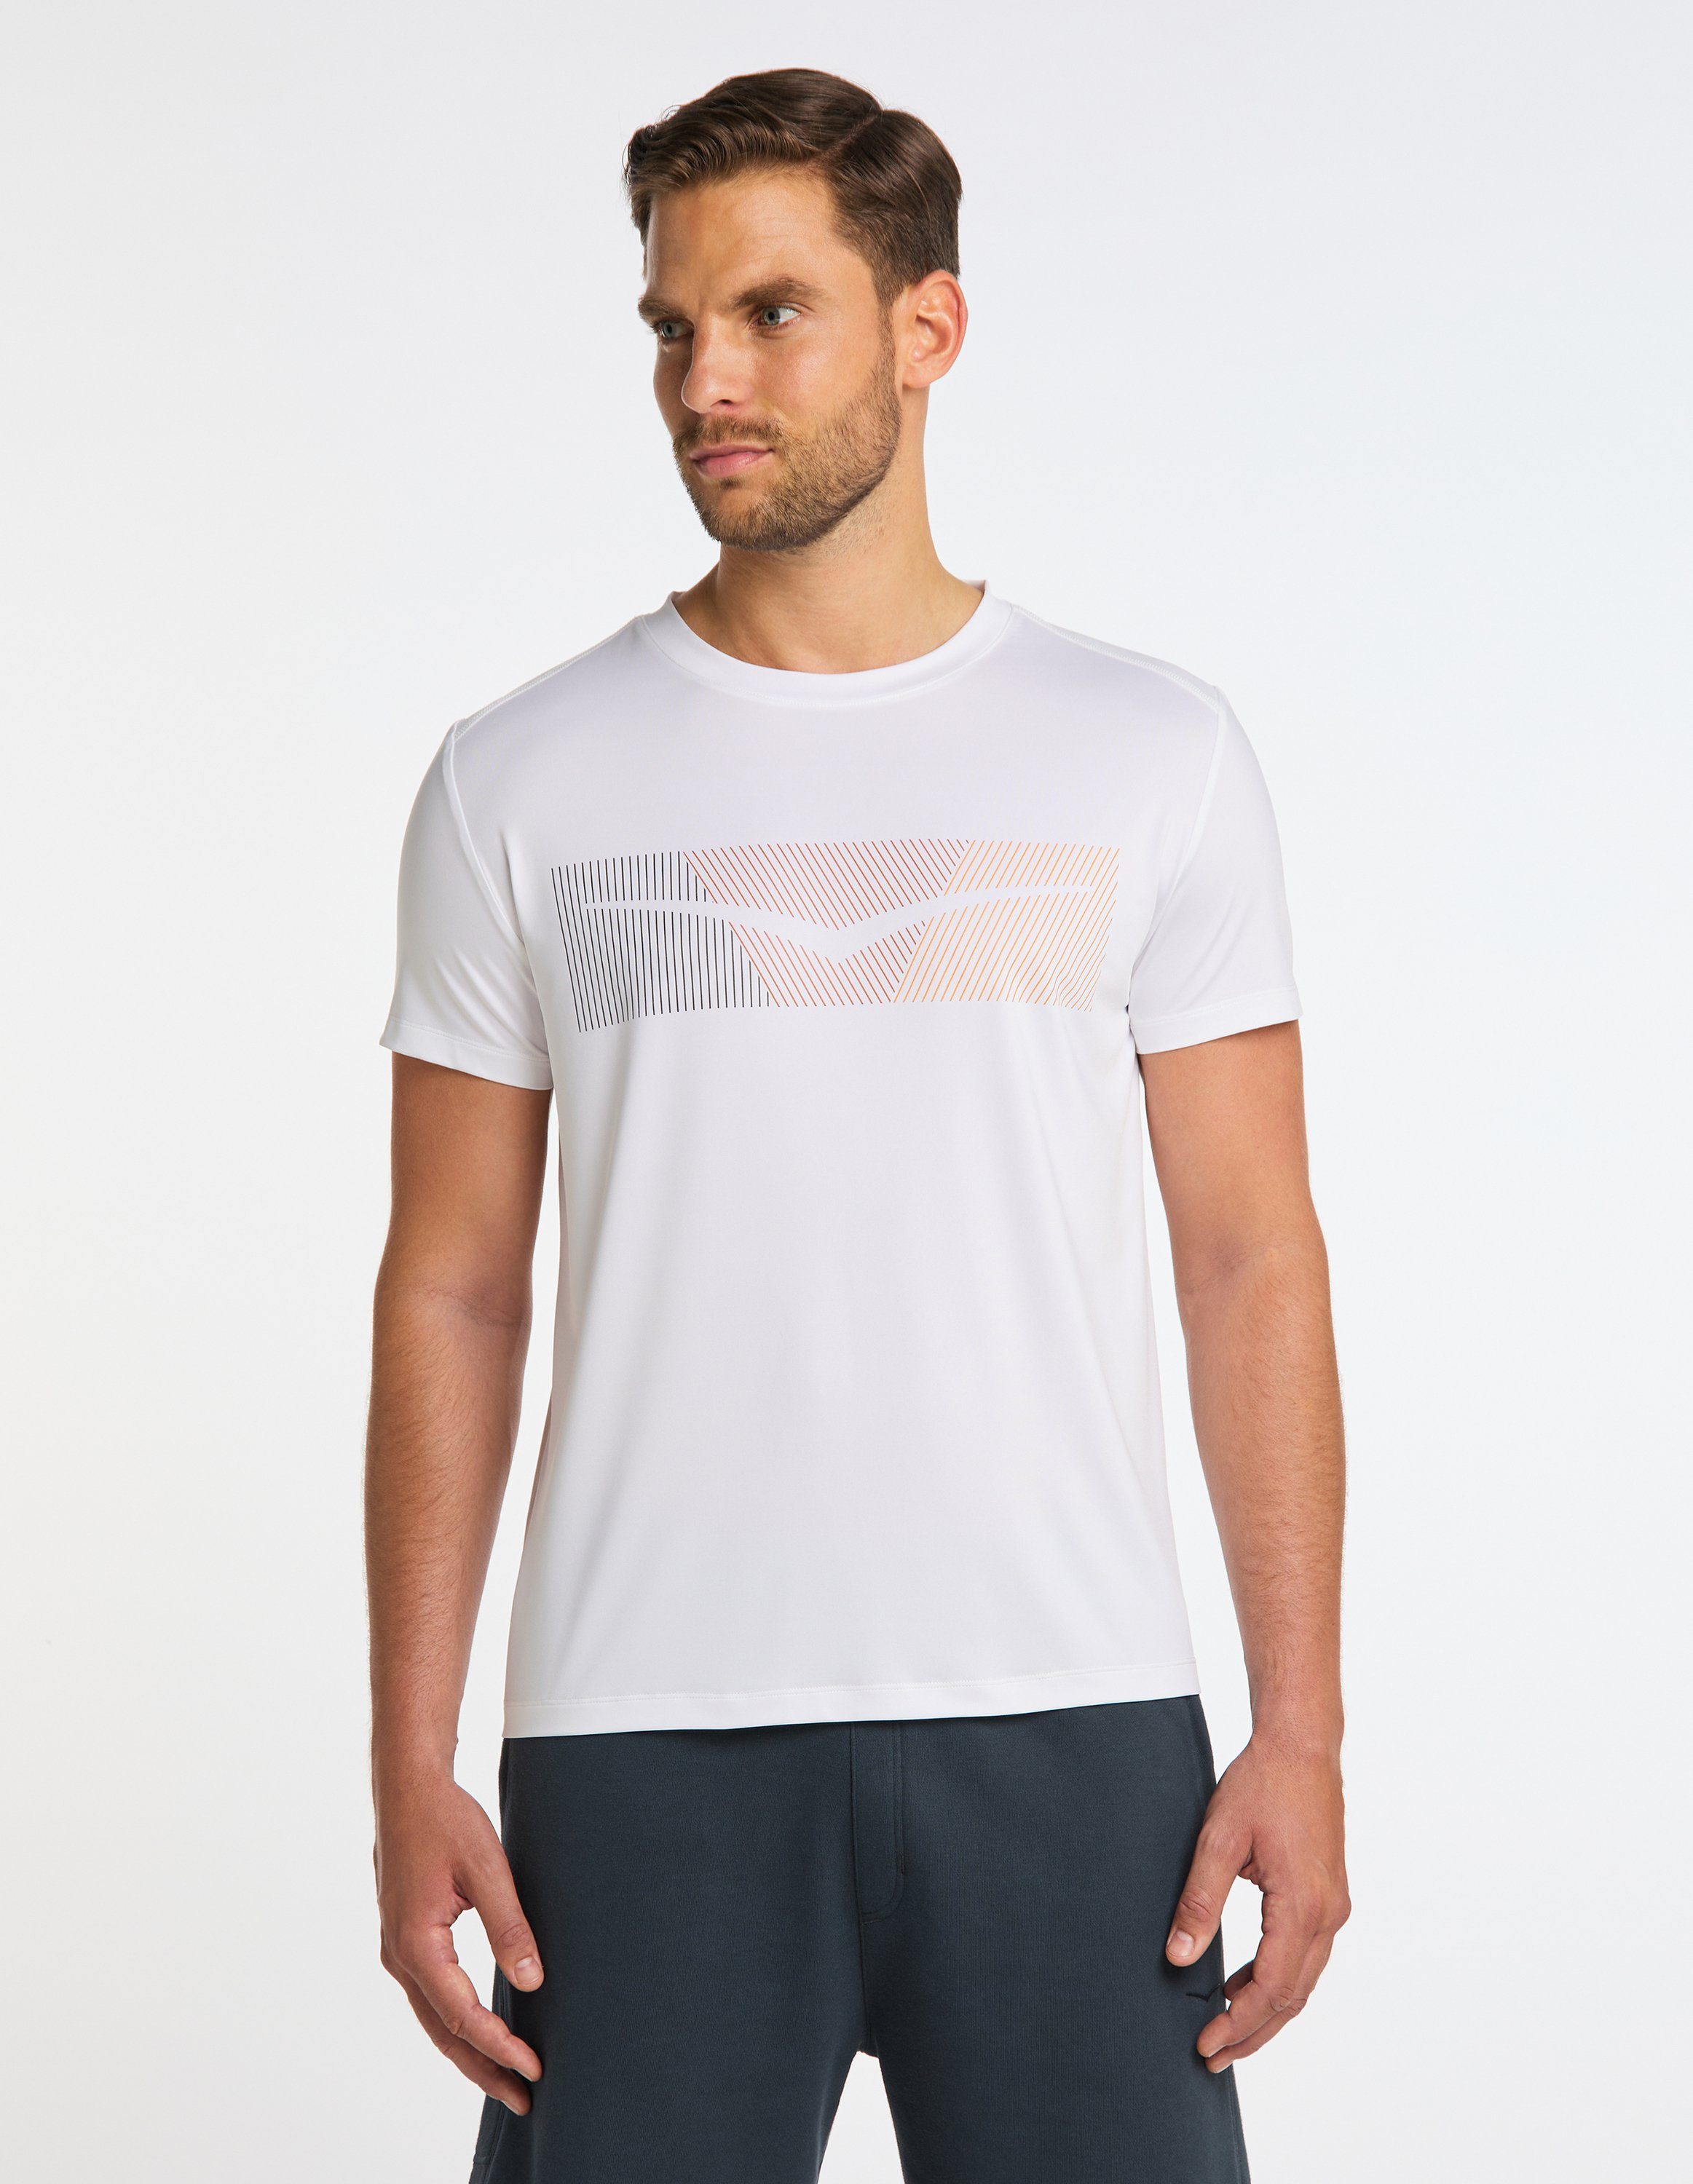 T-Shirt Men HAYES white Beach Venice VB T-Shirt